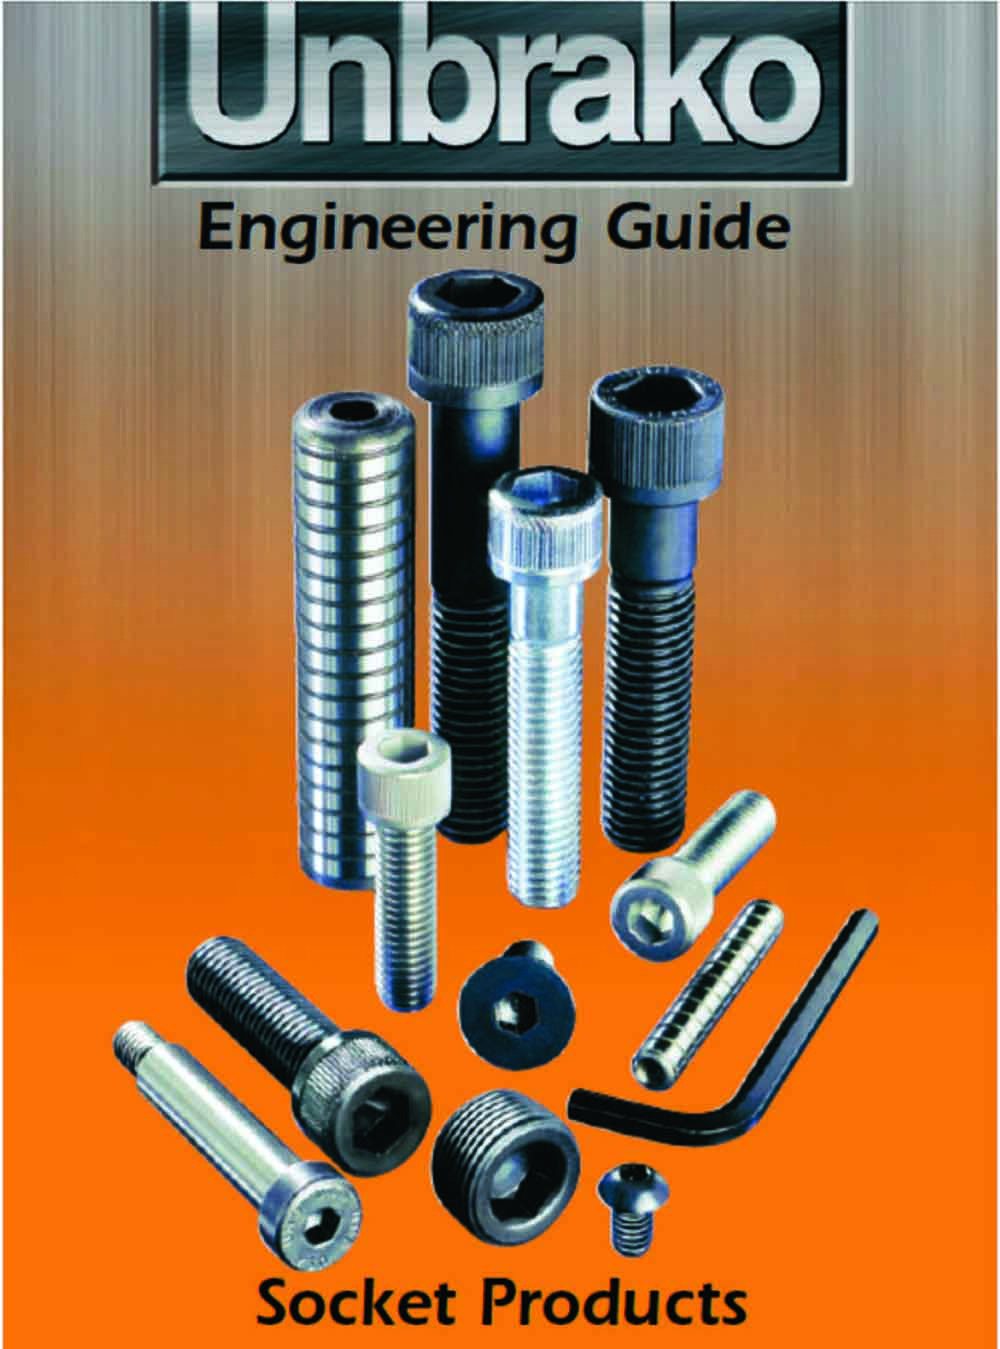 unbrako engineering guide